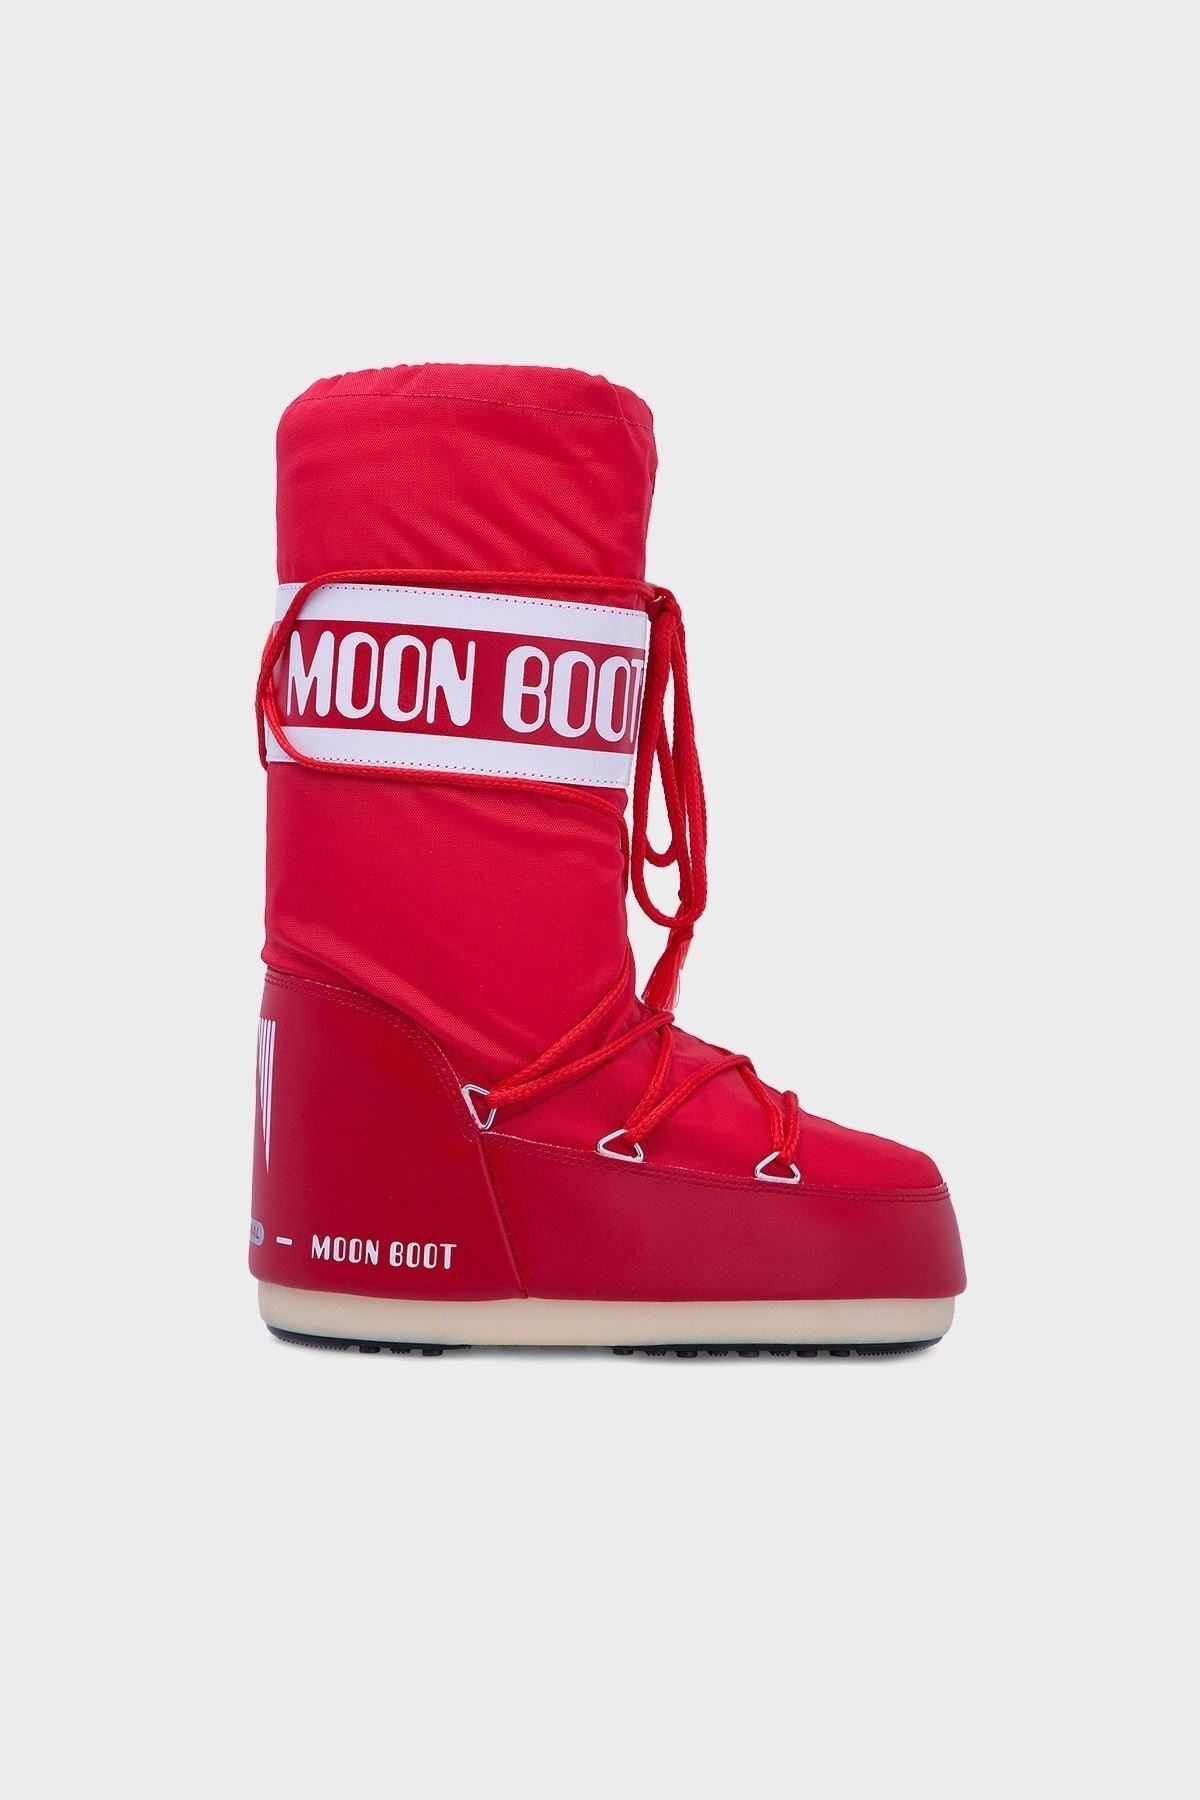 Moon Boot Bayan Kar Botu 14004400 003 KIRMIZI